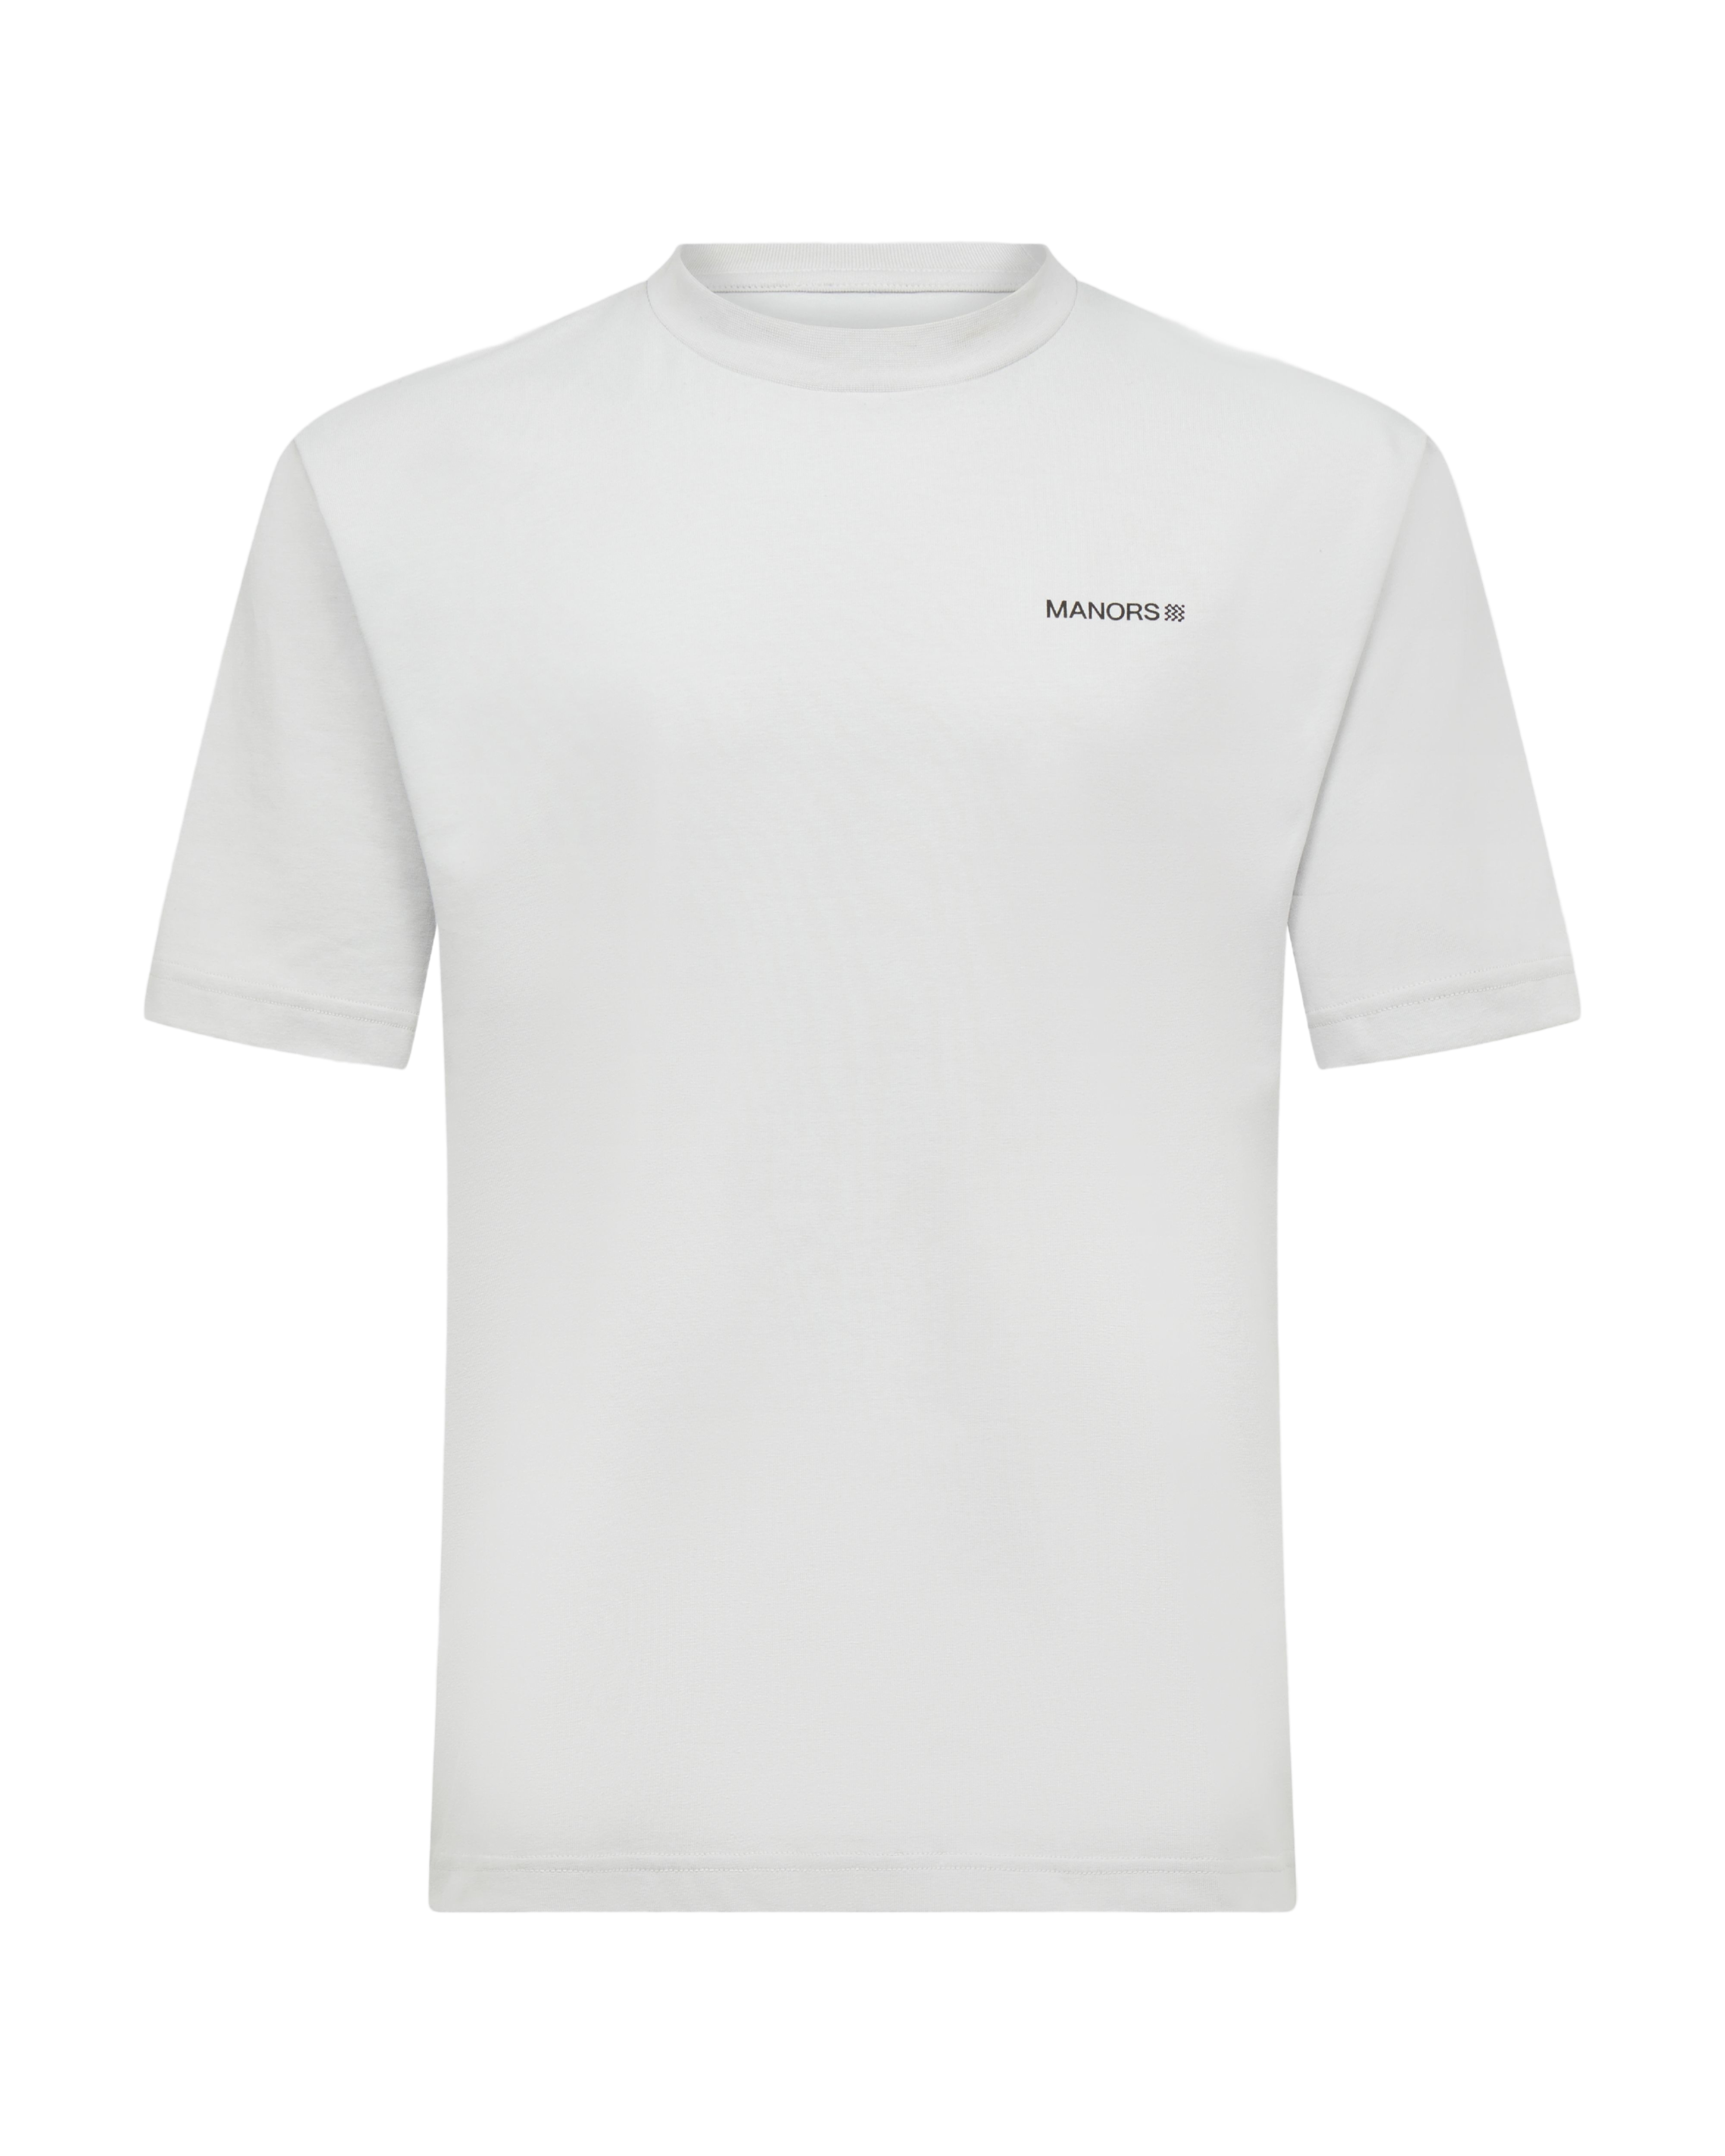 MANORS Men's Manors Logo T-Shirt | golf and sports fashion brands at agorabkk 